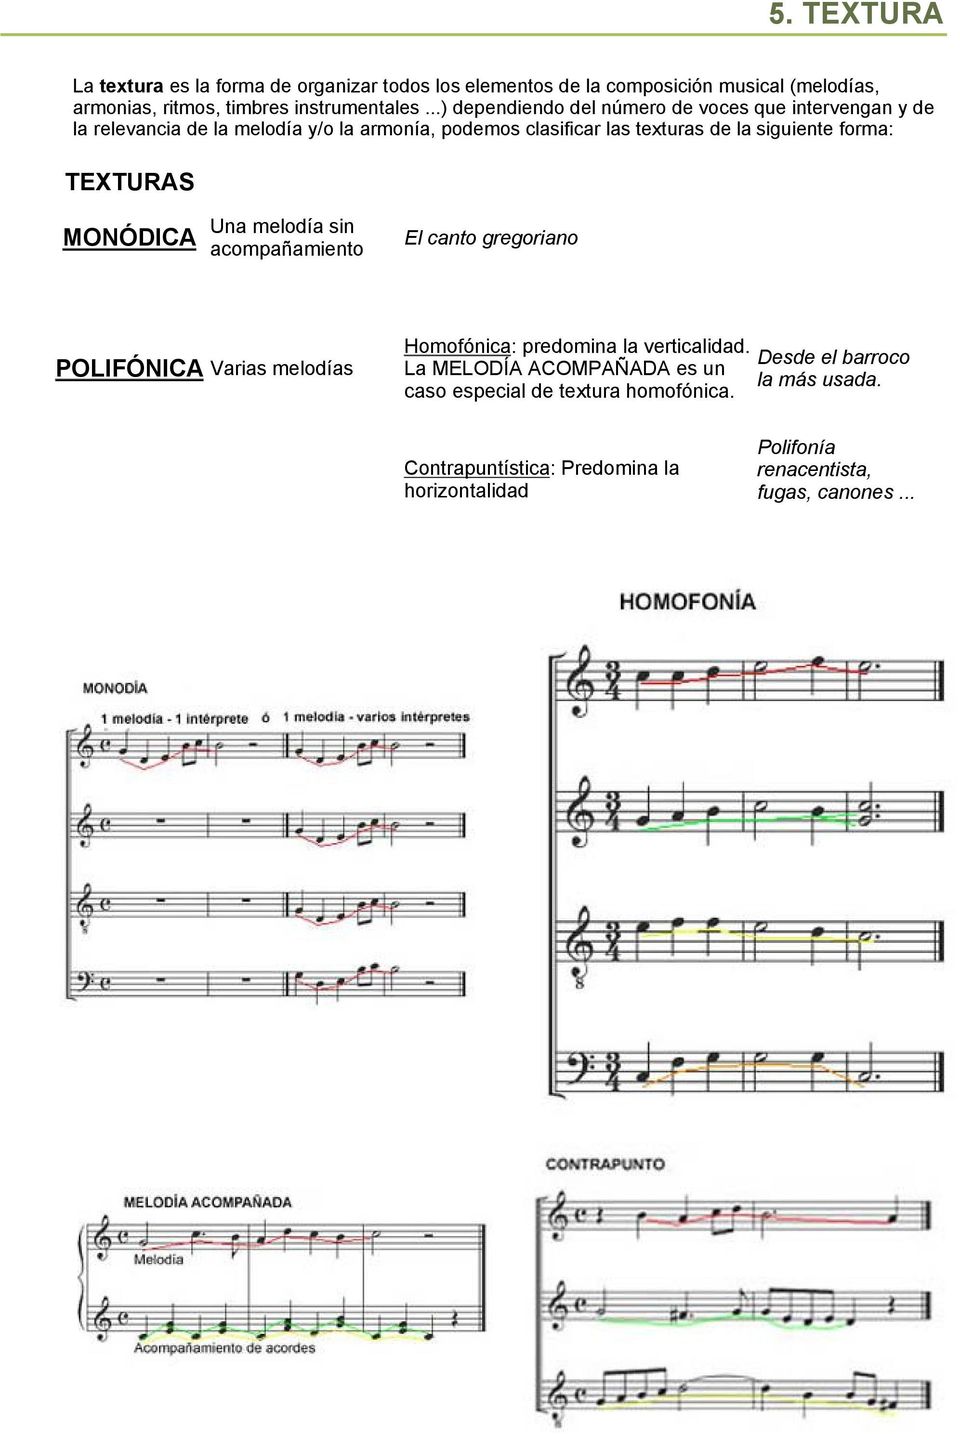 forma: TEXTURAS MONÓDICA Una melodía sin acompañamiento El canto gregoriano POLIFÓNICA Varias melodías Homofónica: predomina la verticalidad.